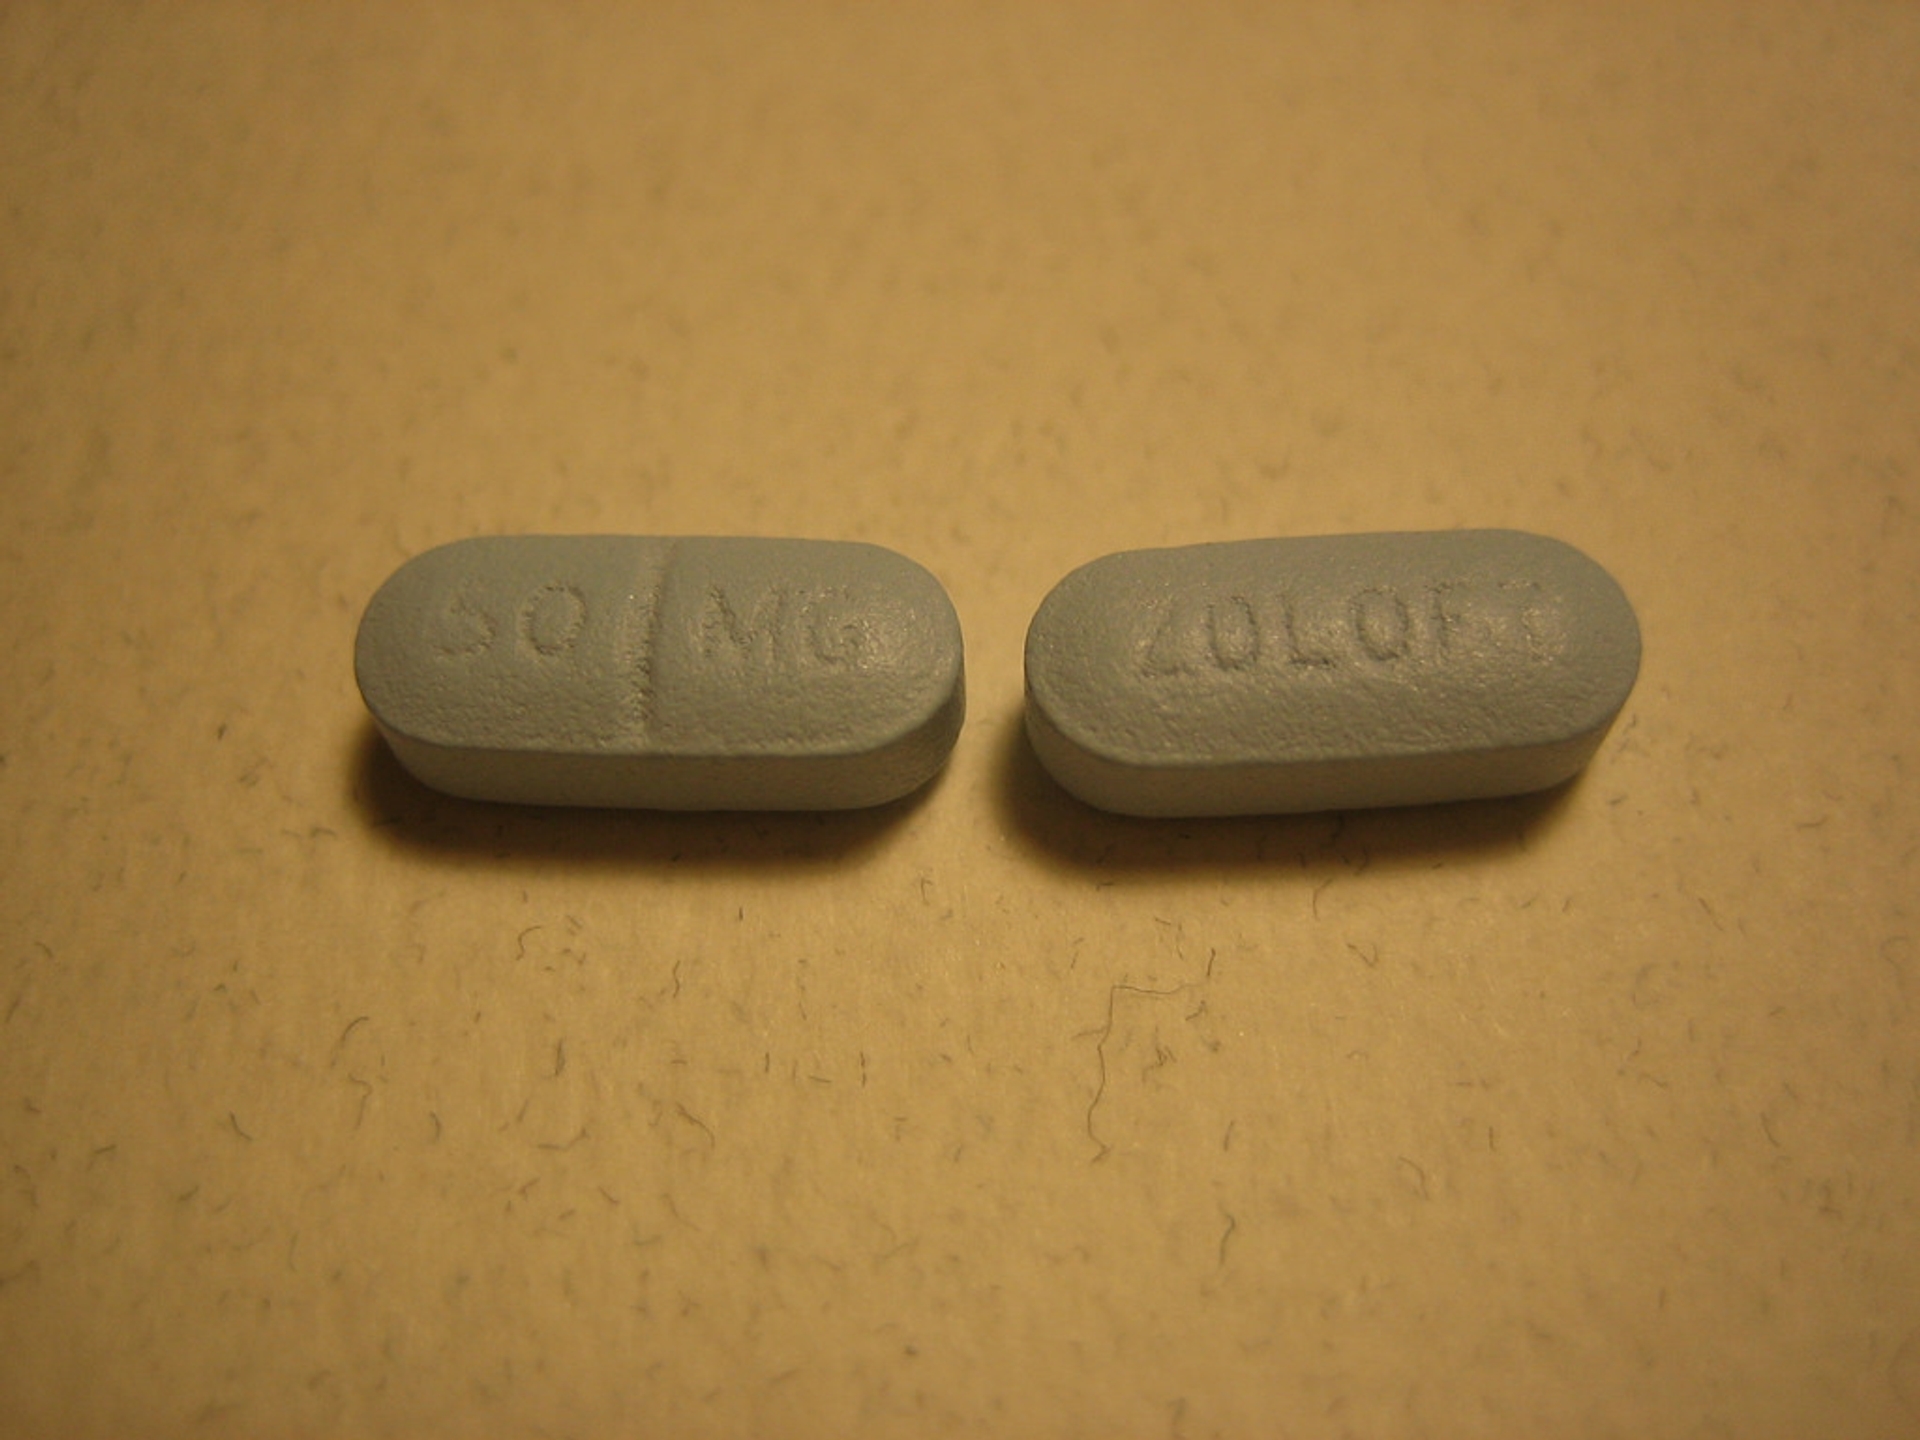 Afbeelding van ZEMBLA: Antidepressiva, een recept voor moord?